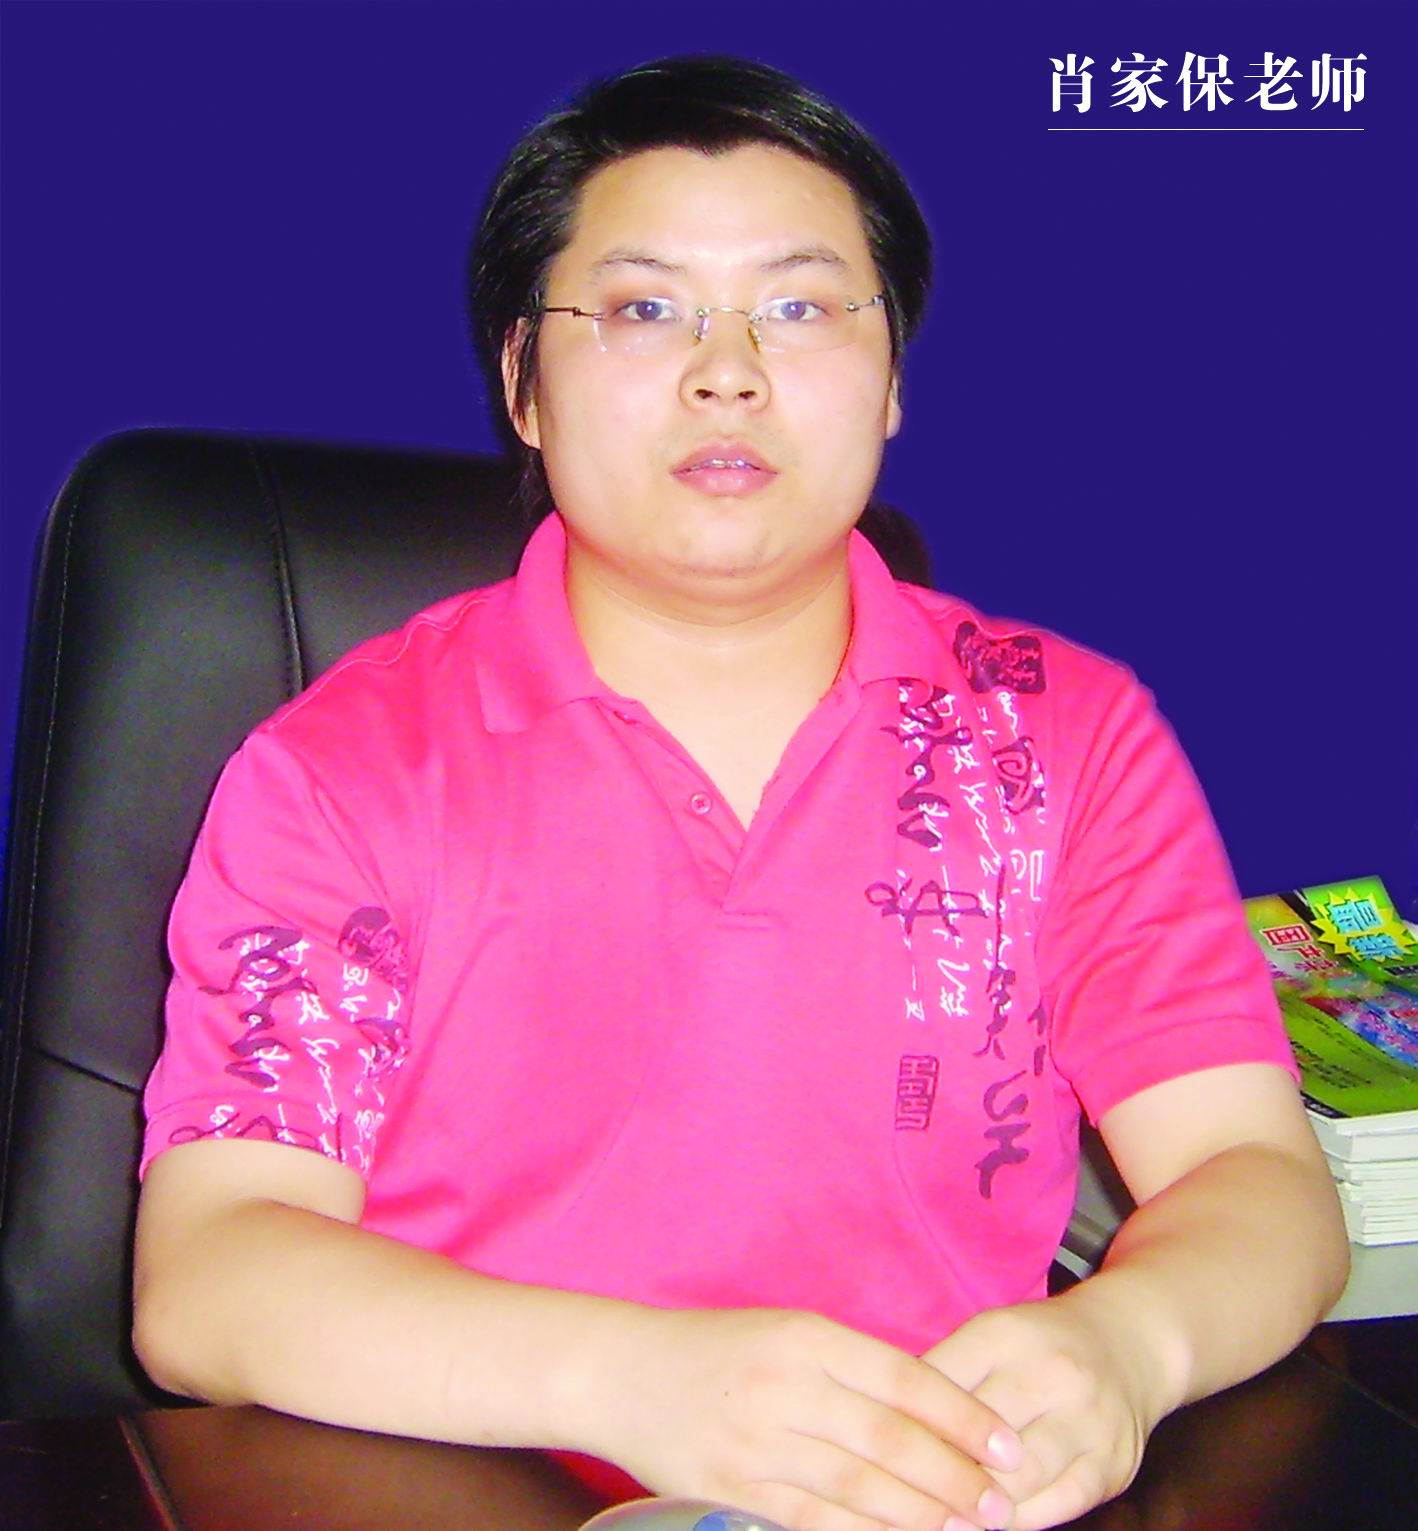 湖南长沙三信专业手机维修培训中心